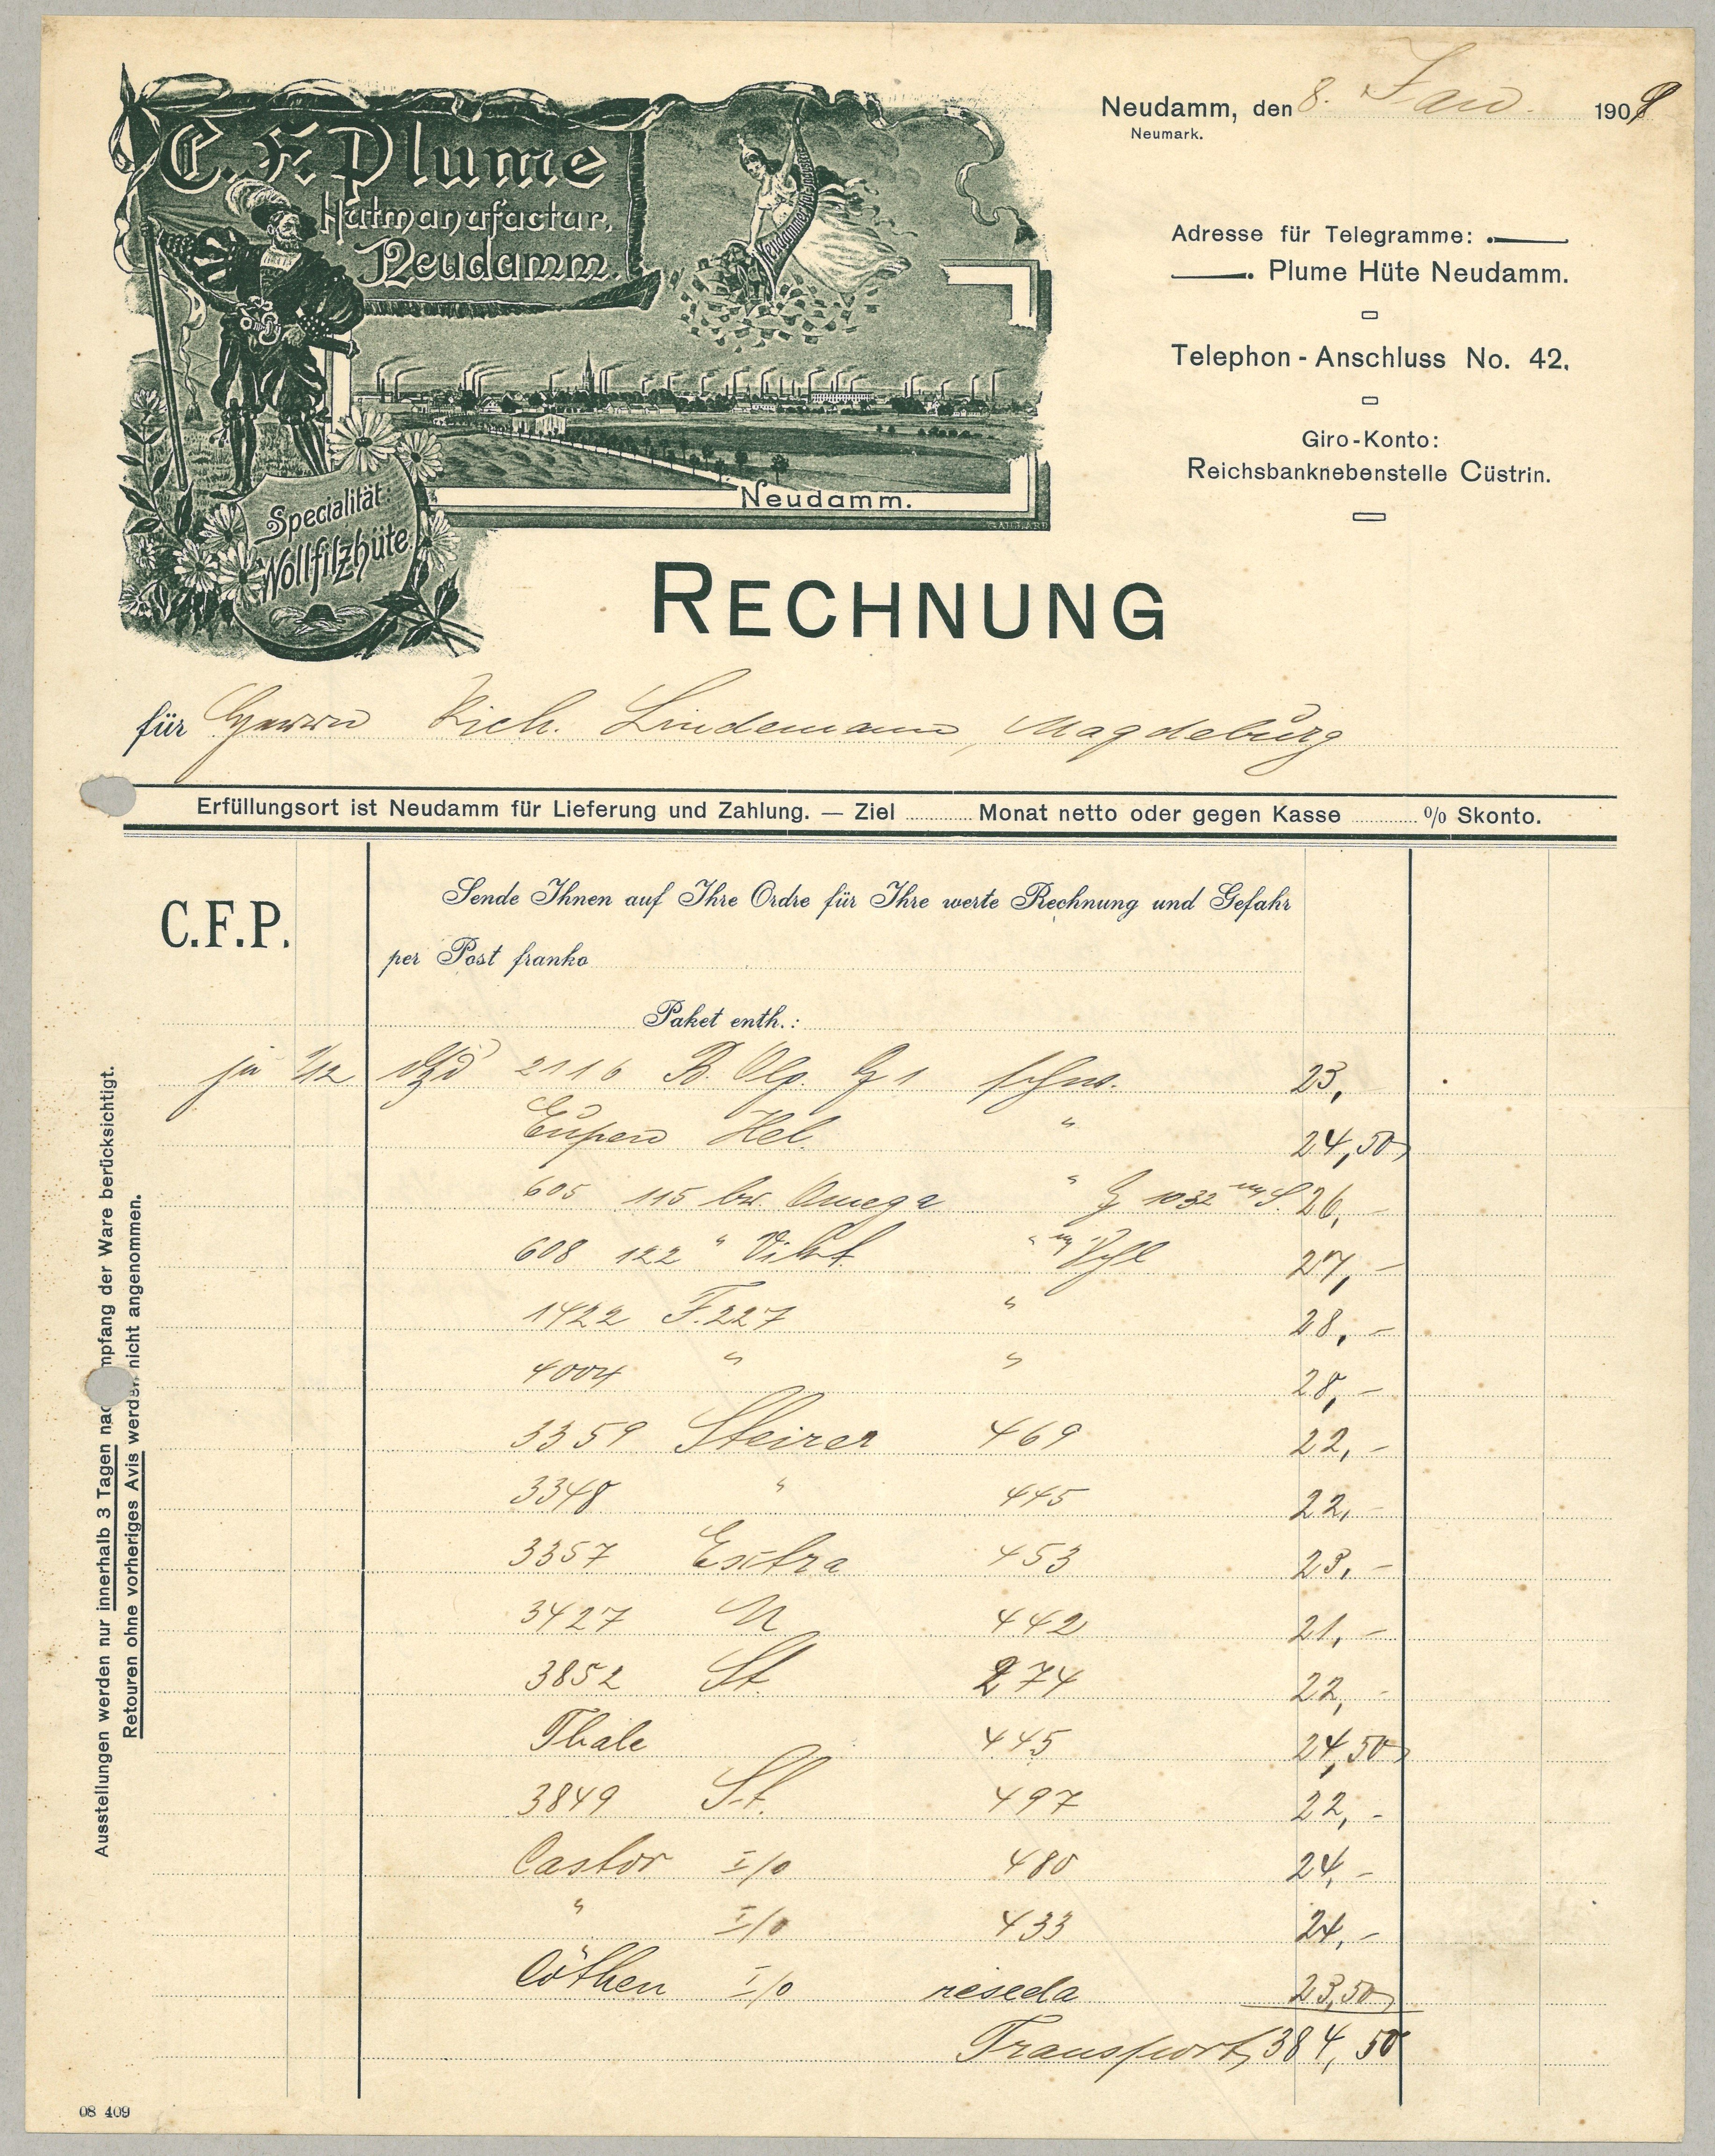 Rechnung der Hutfabrik C. F. Plume in Neudamm [Dębno] 1909 (Landesgeschichtliche Vereinigung für die Mark Brandenburg e.V., Archiv CC BY)